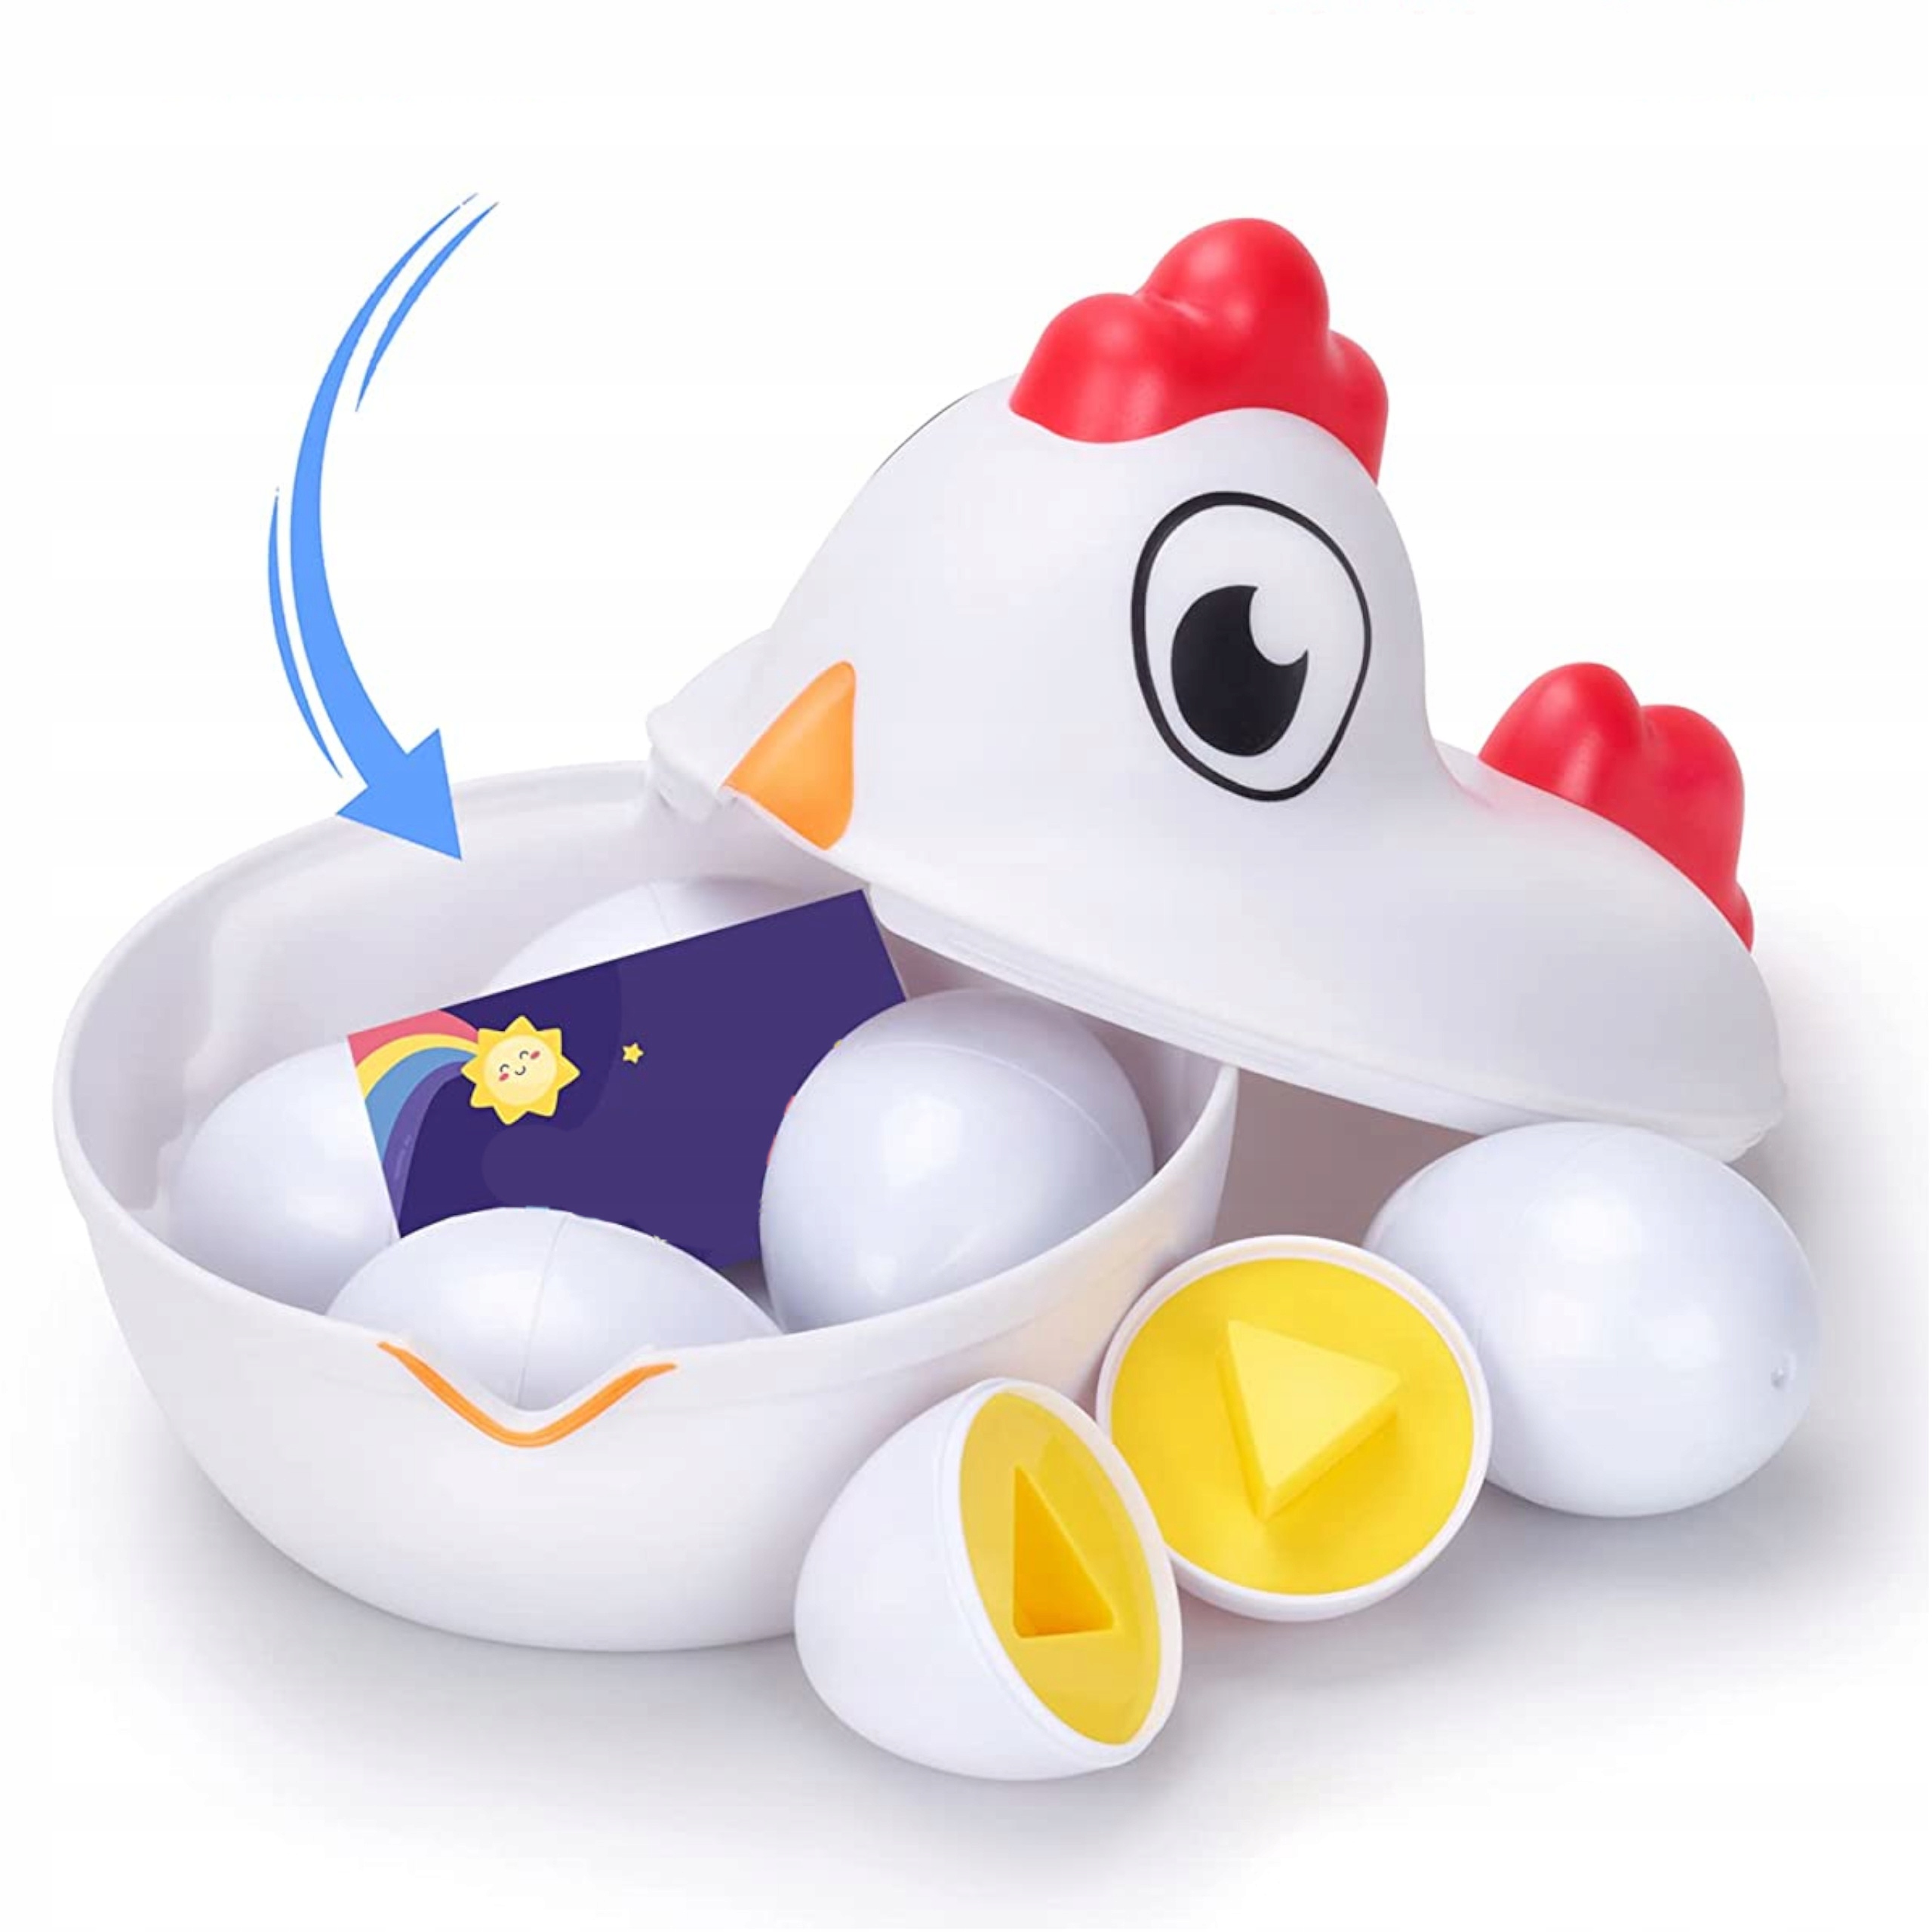 Układanka sorter jajka Montessori kolory DF18 Materiał plastik